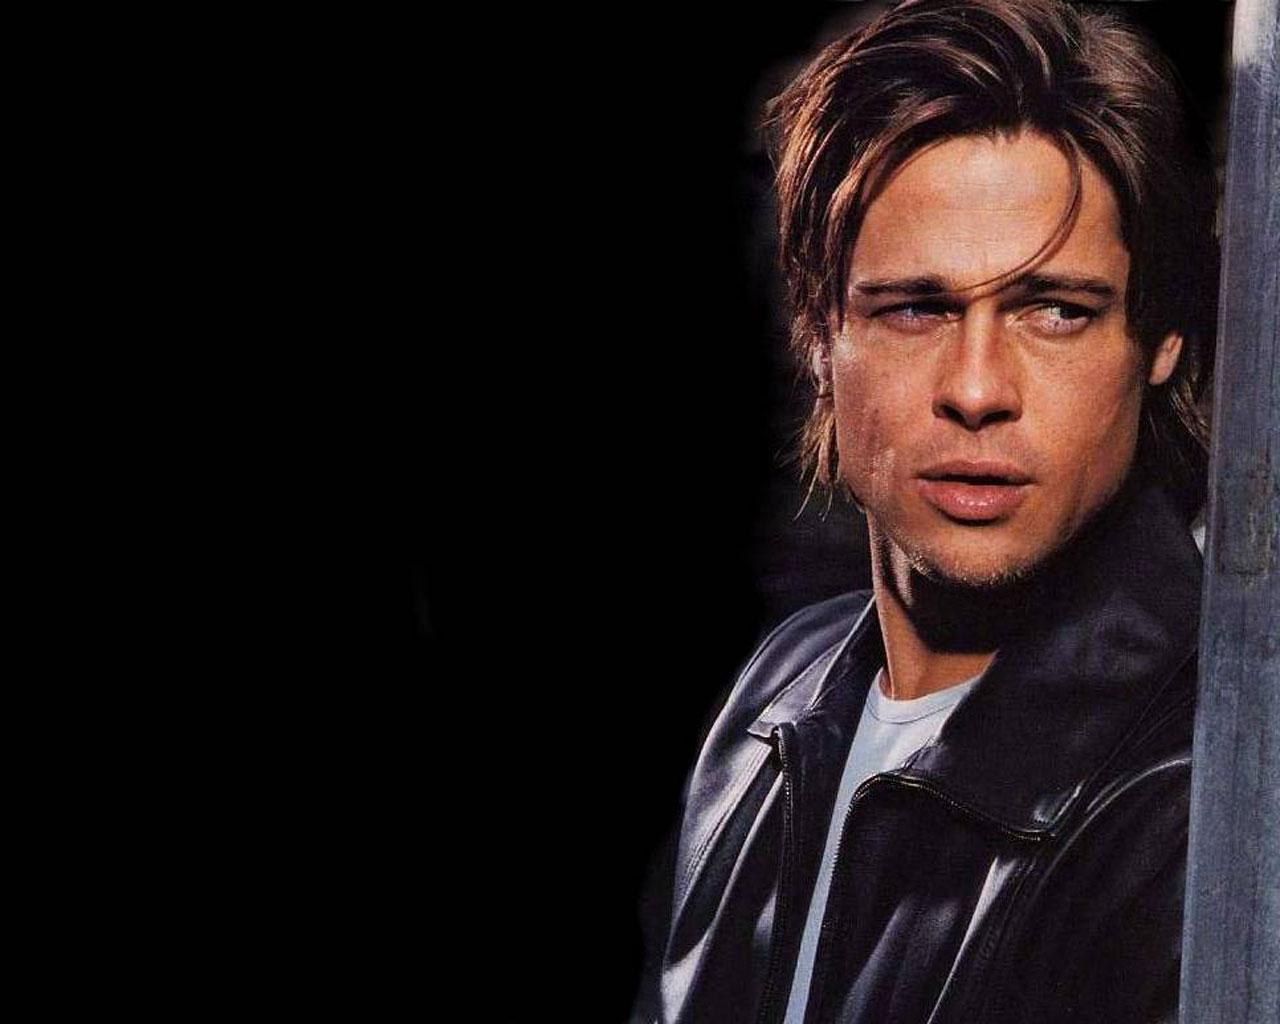 Brad Pitt wallpaper